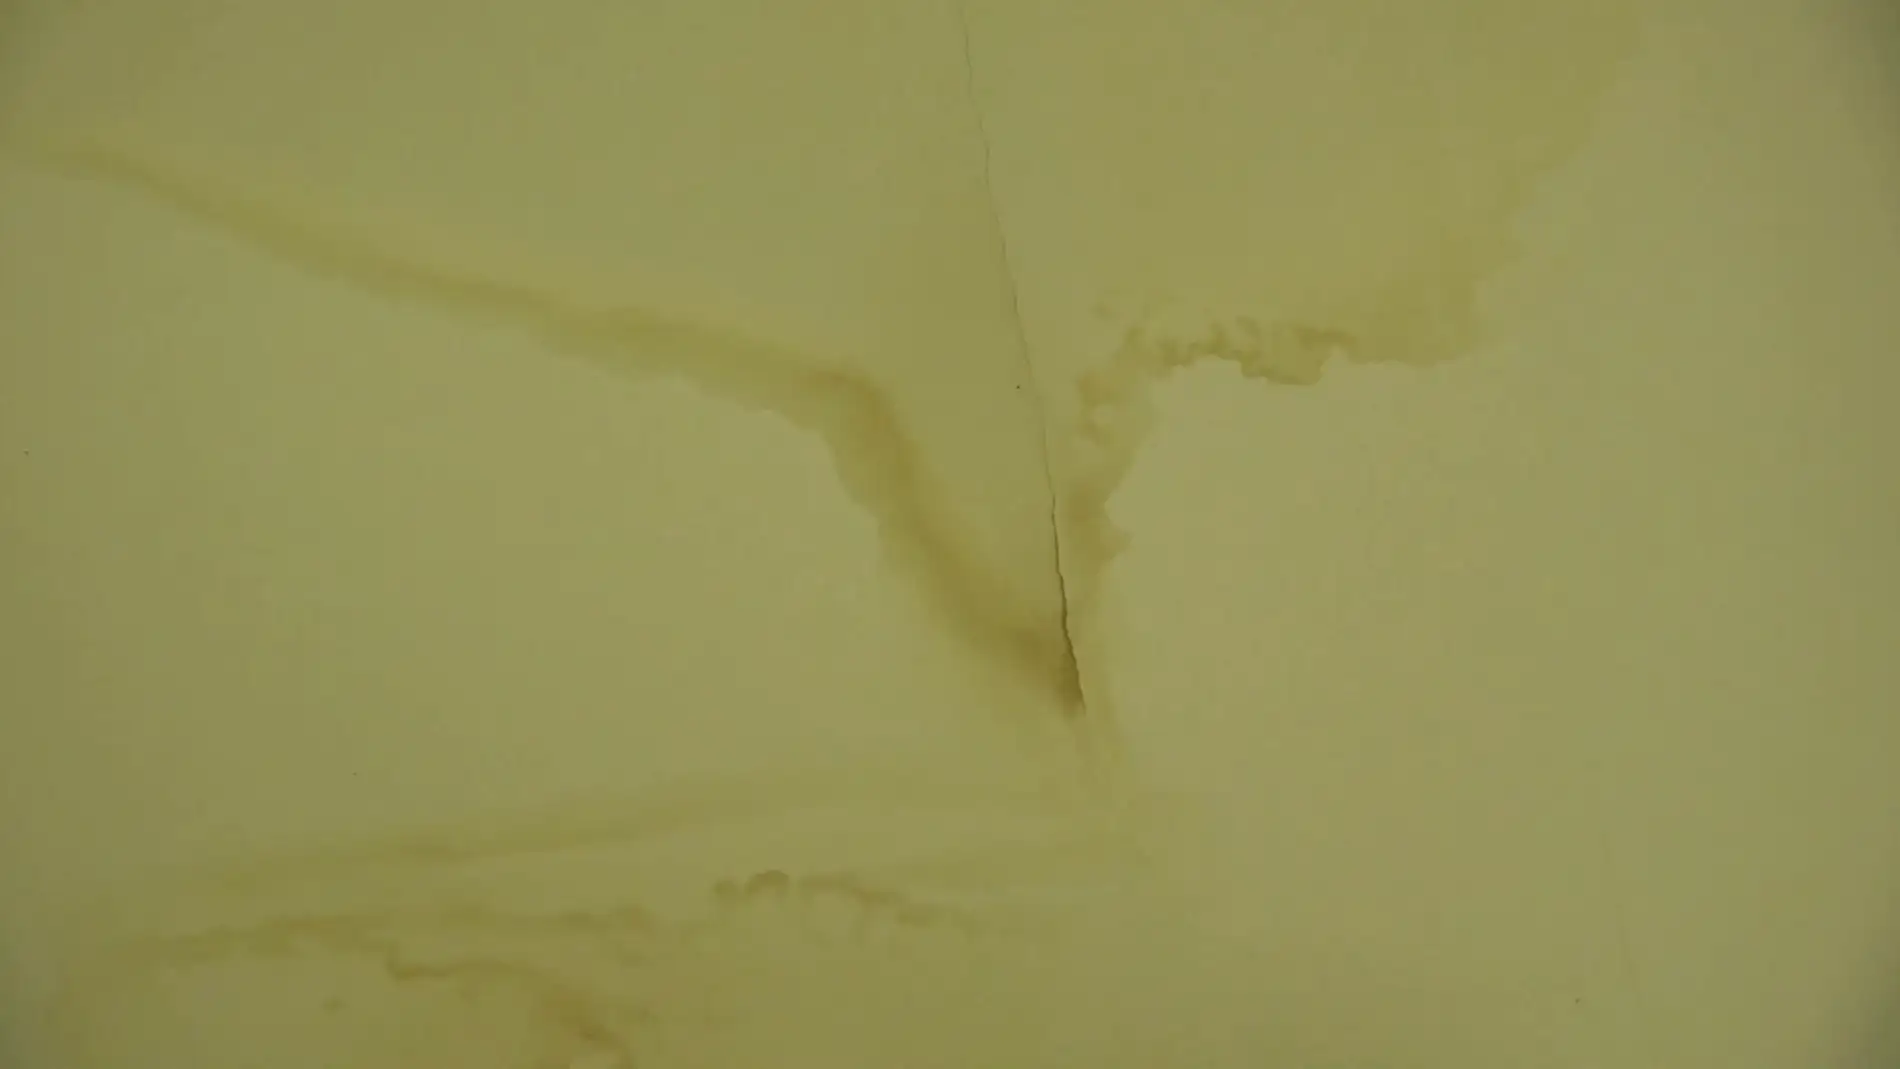 Cómo eliminar la humedad de las paredes